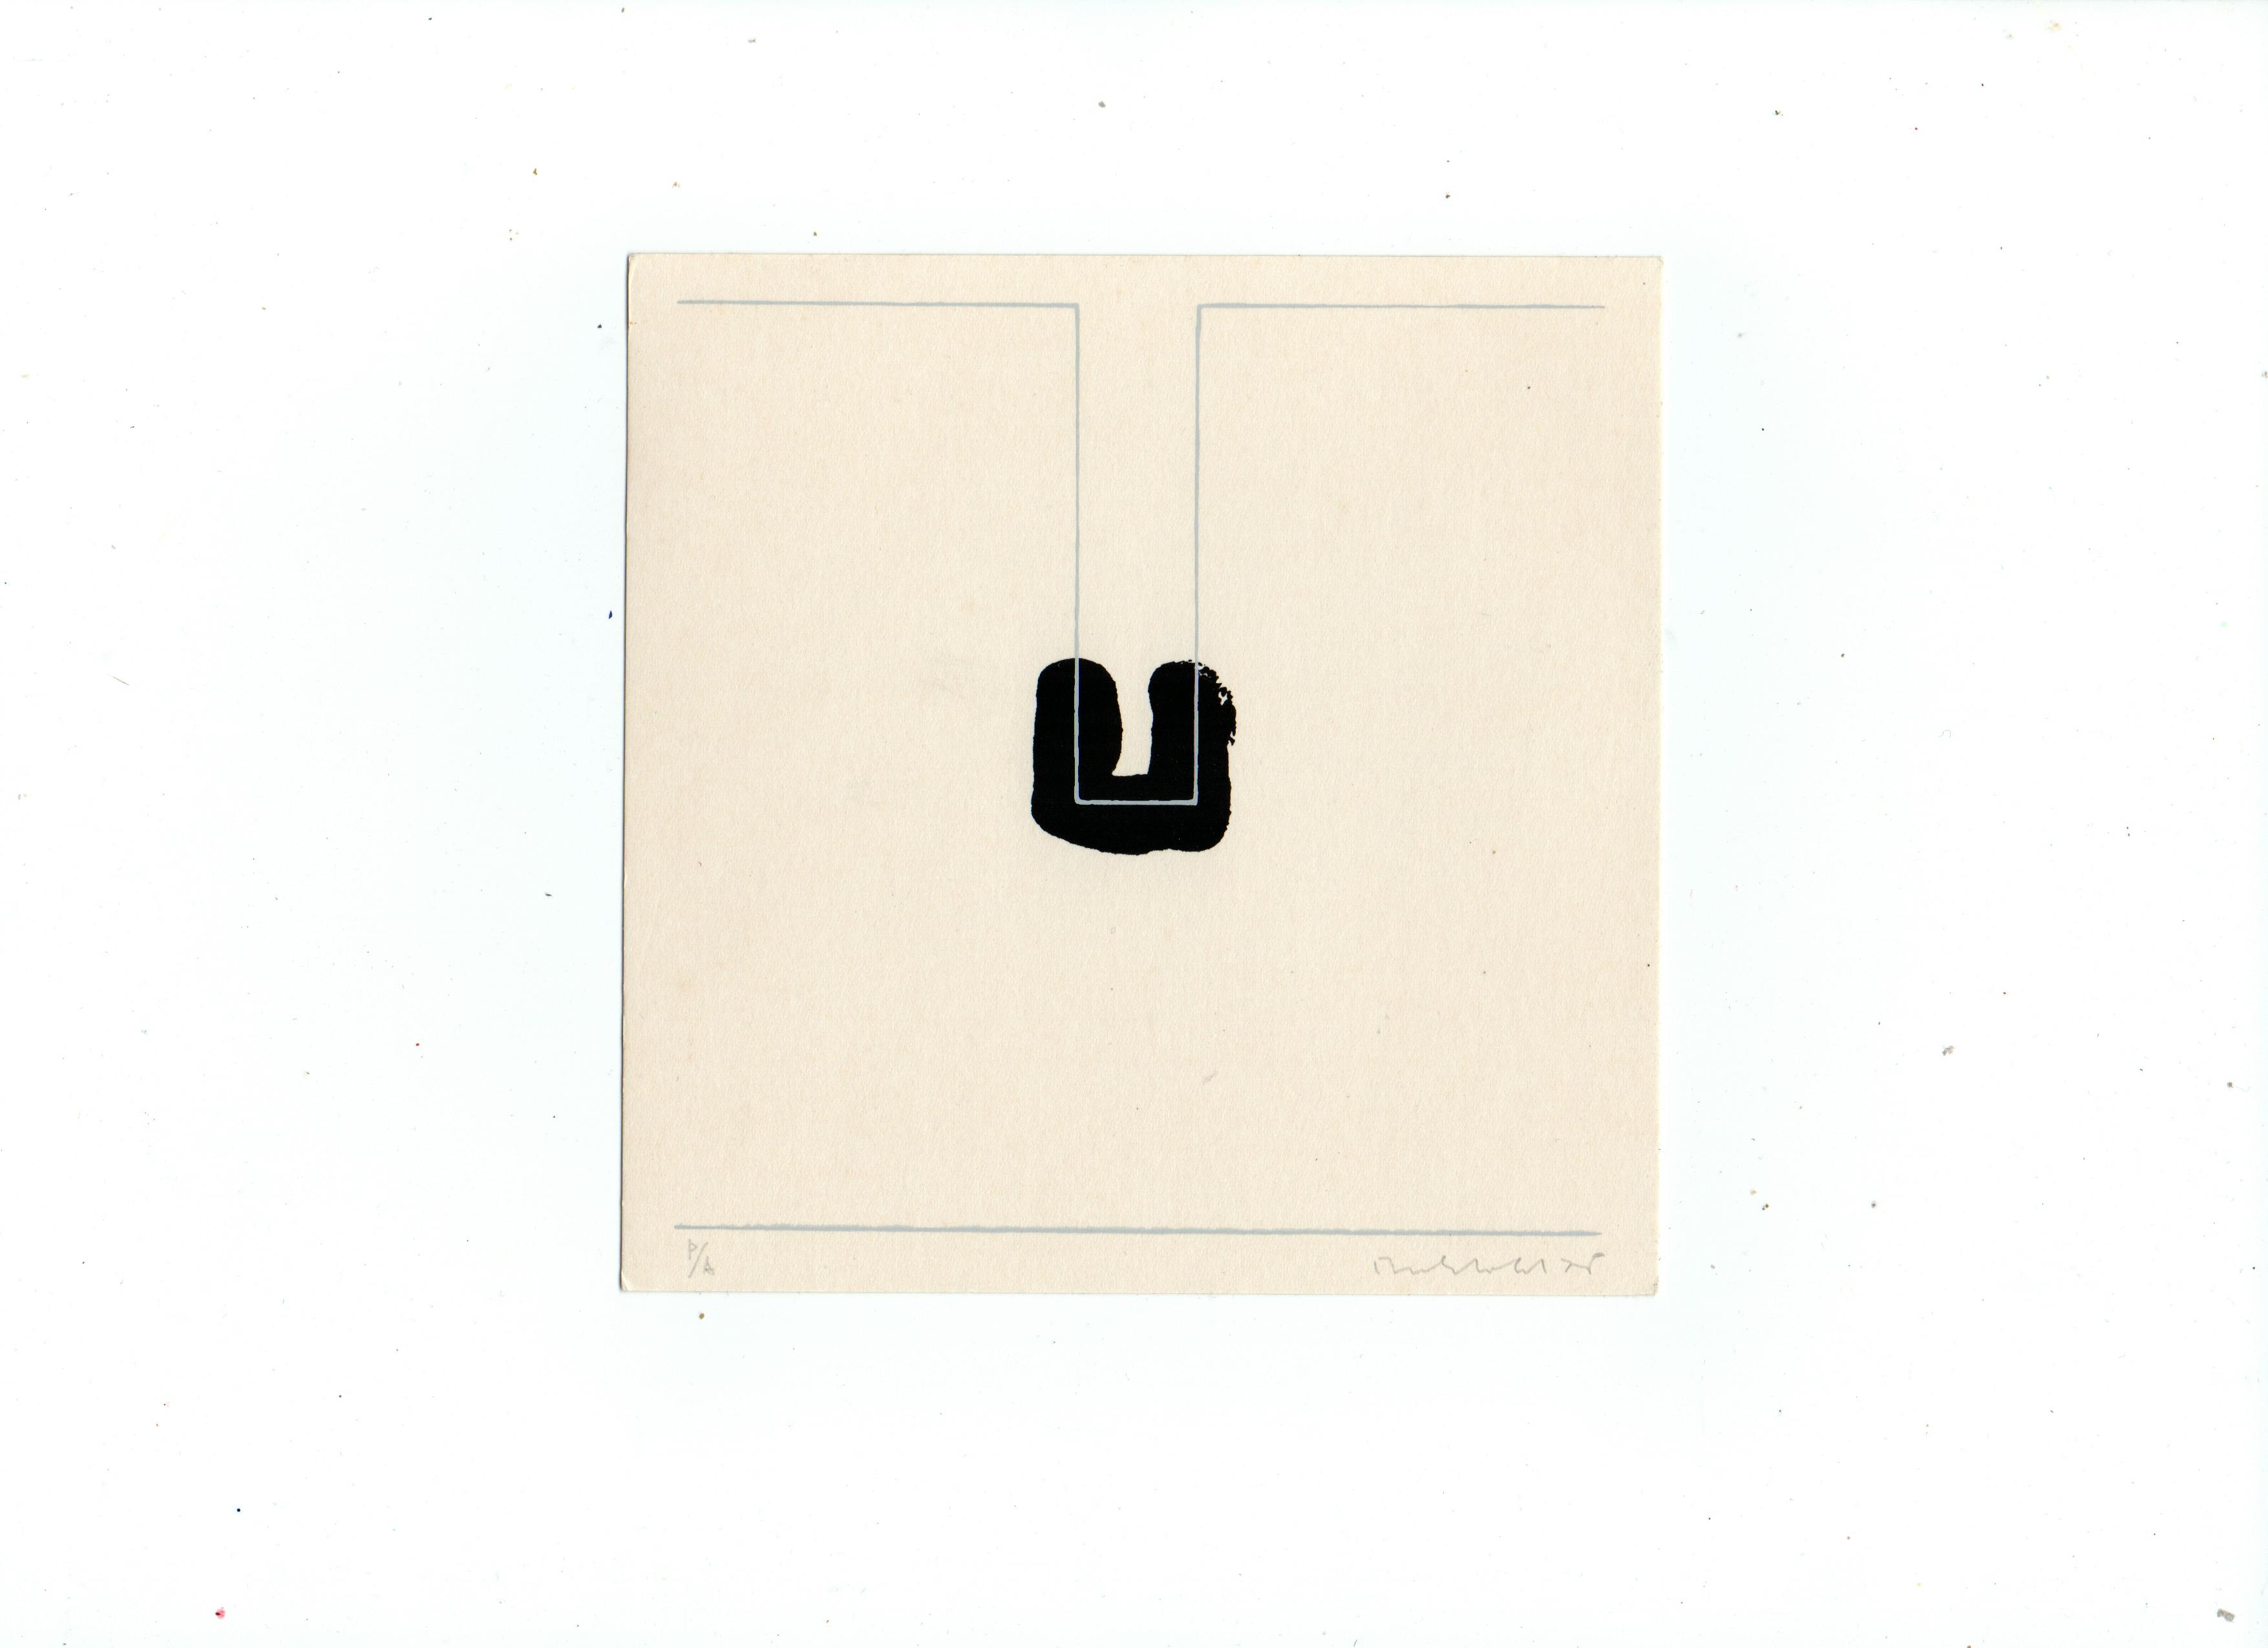 Erwin Bechtold - Zeefdruk - ‘Abstracte compositie’ - handgesigneerd - 1975 kopen? Bied vanaf 30!